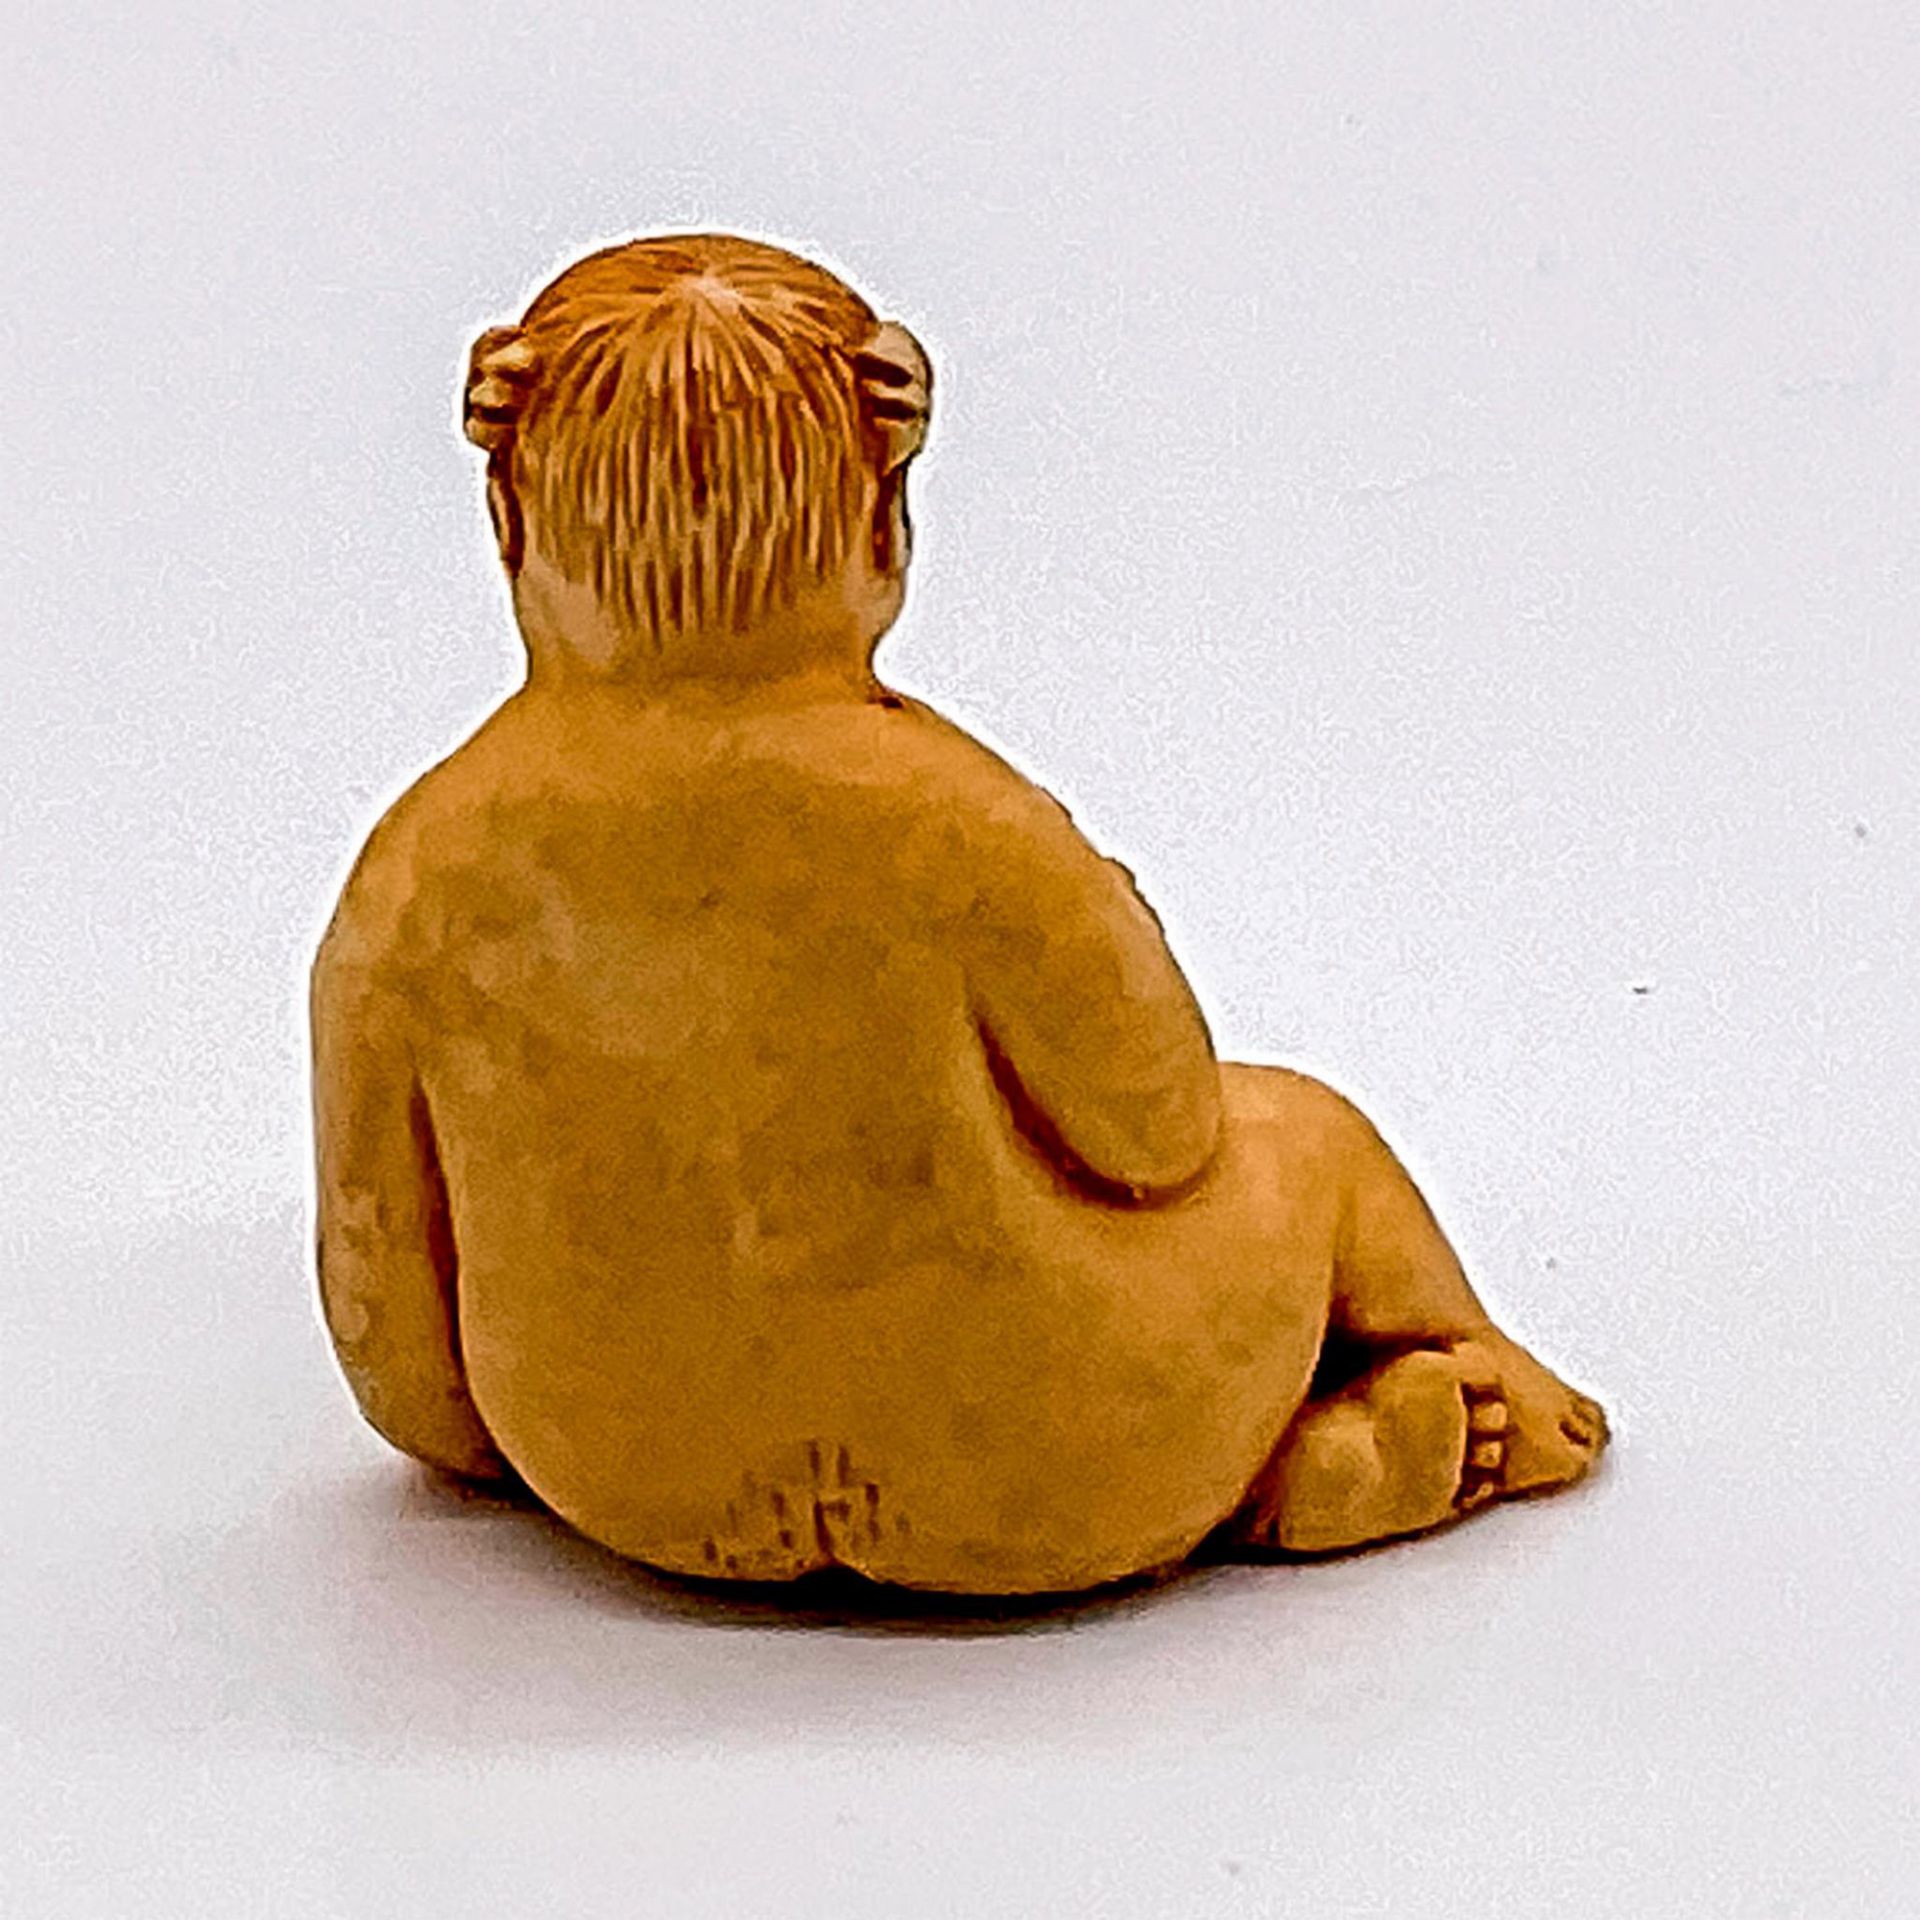 Japanese Miniature Resin Figurine - Image 2 of 3